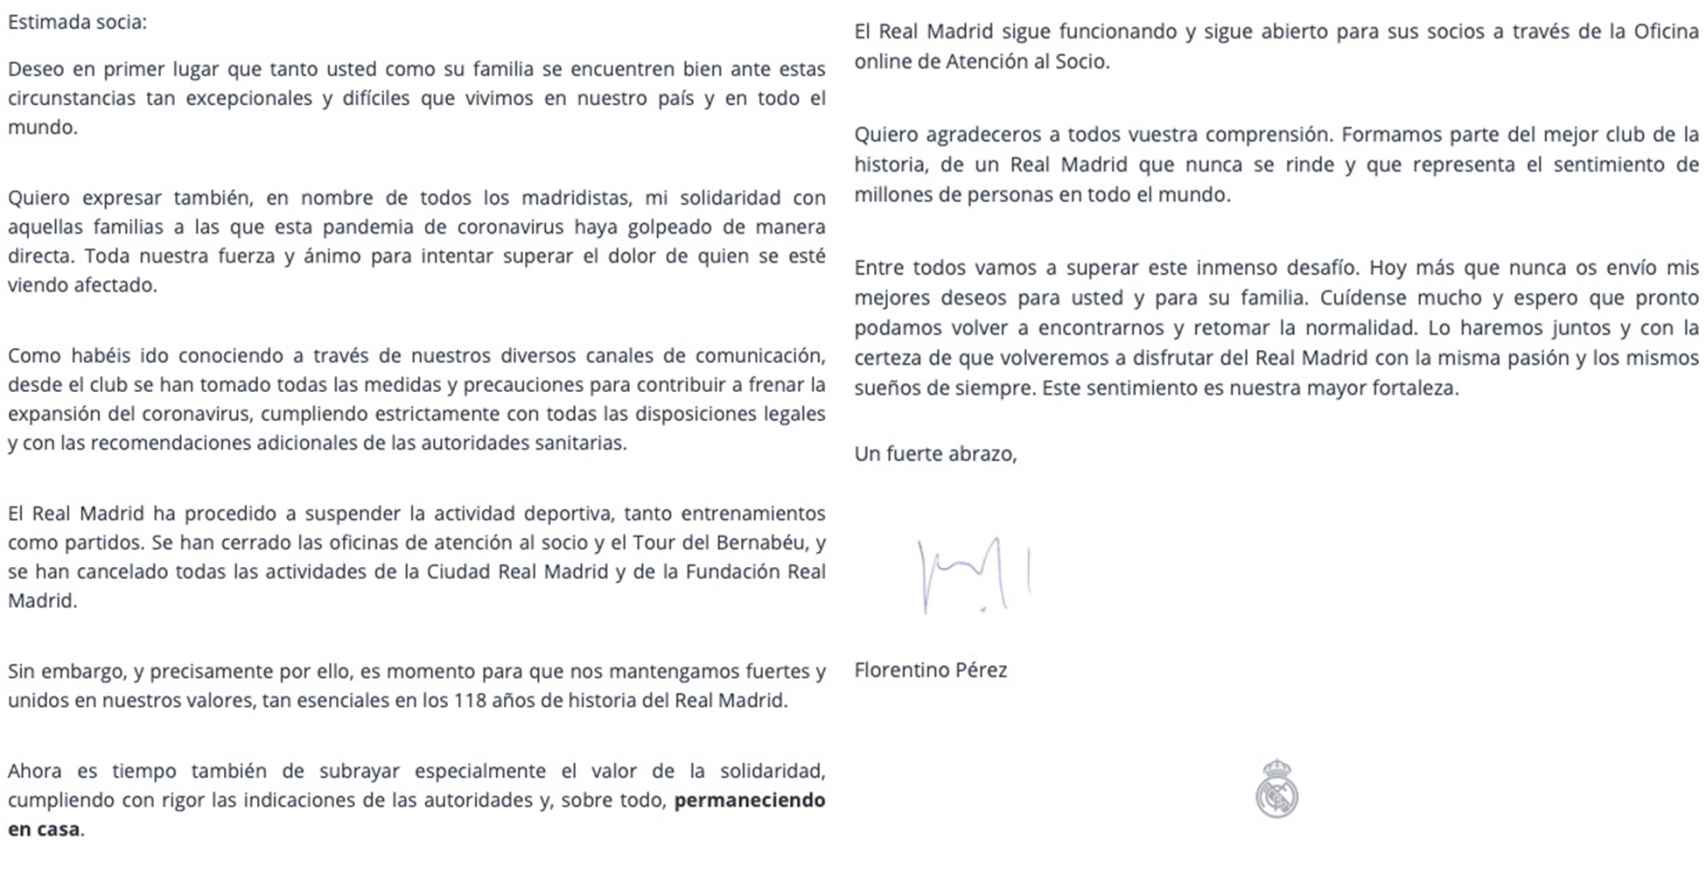 La carta de Florentino Pérez a los socios del Real Madrid por el coronavirus